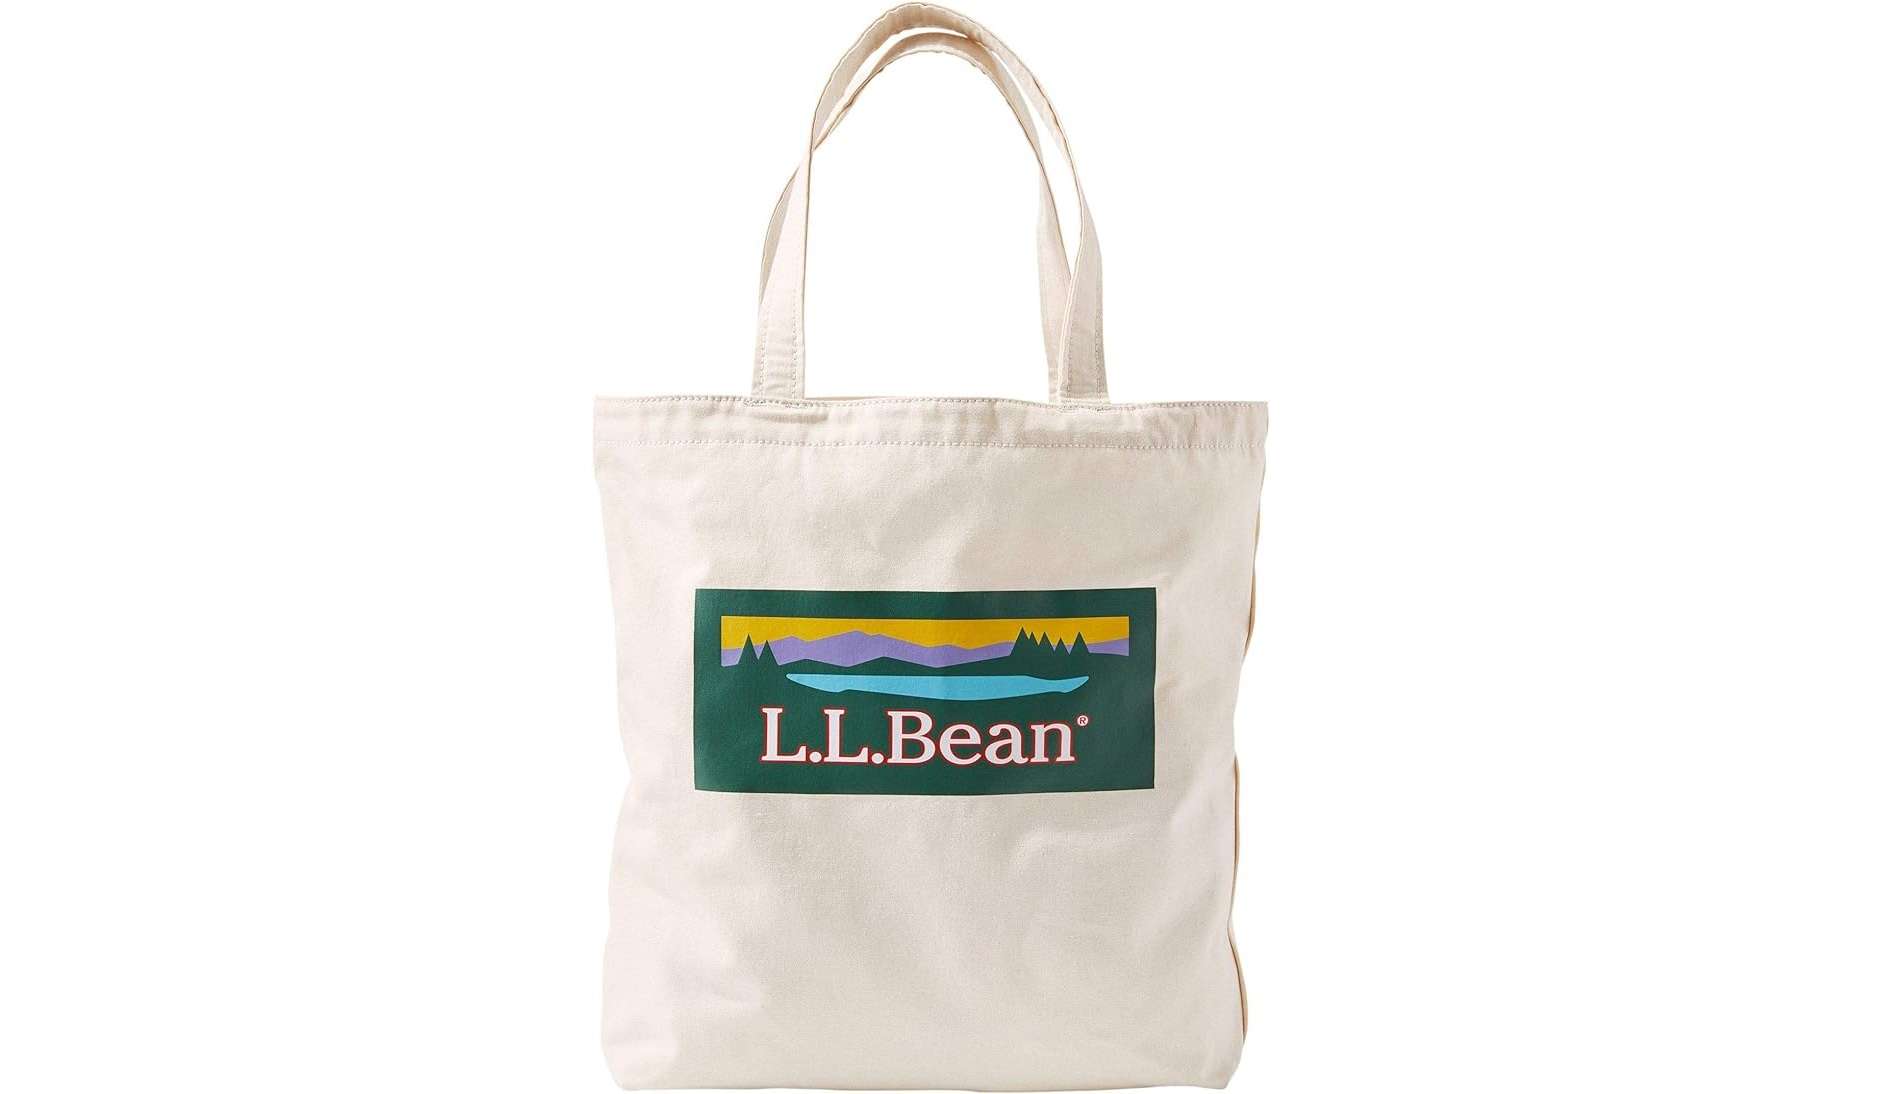 Amazonタイムセールで【L.L.Bean】がこんなにお得に⁉ トートバッグ、ジャケット...【最大37％OFF】 51wQpxCZ1xL._AC_UX679_.jpg